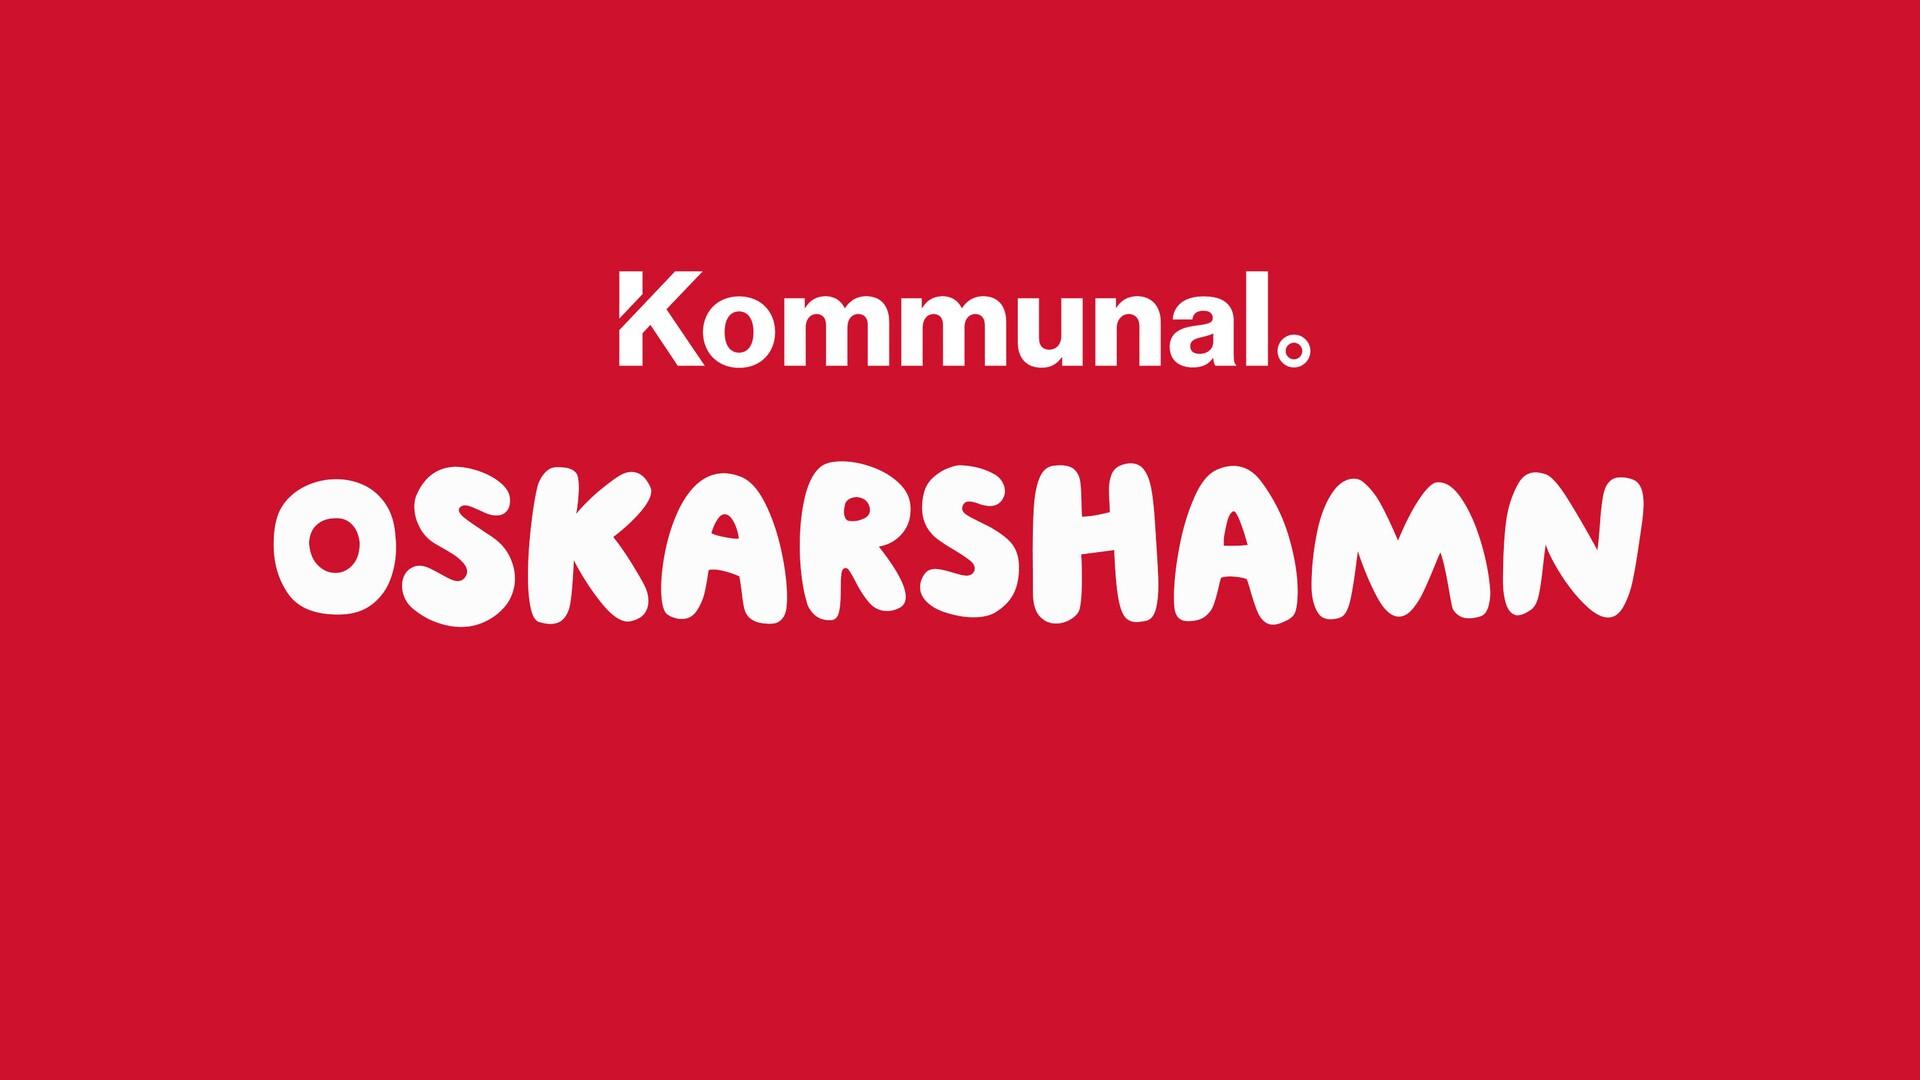 Kommunal Oskarshamn